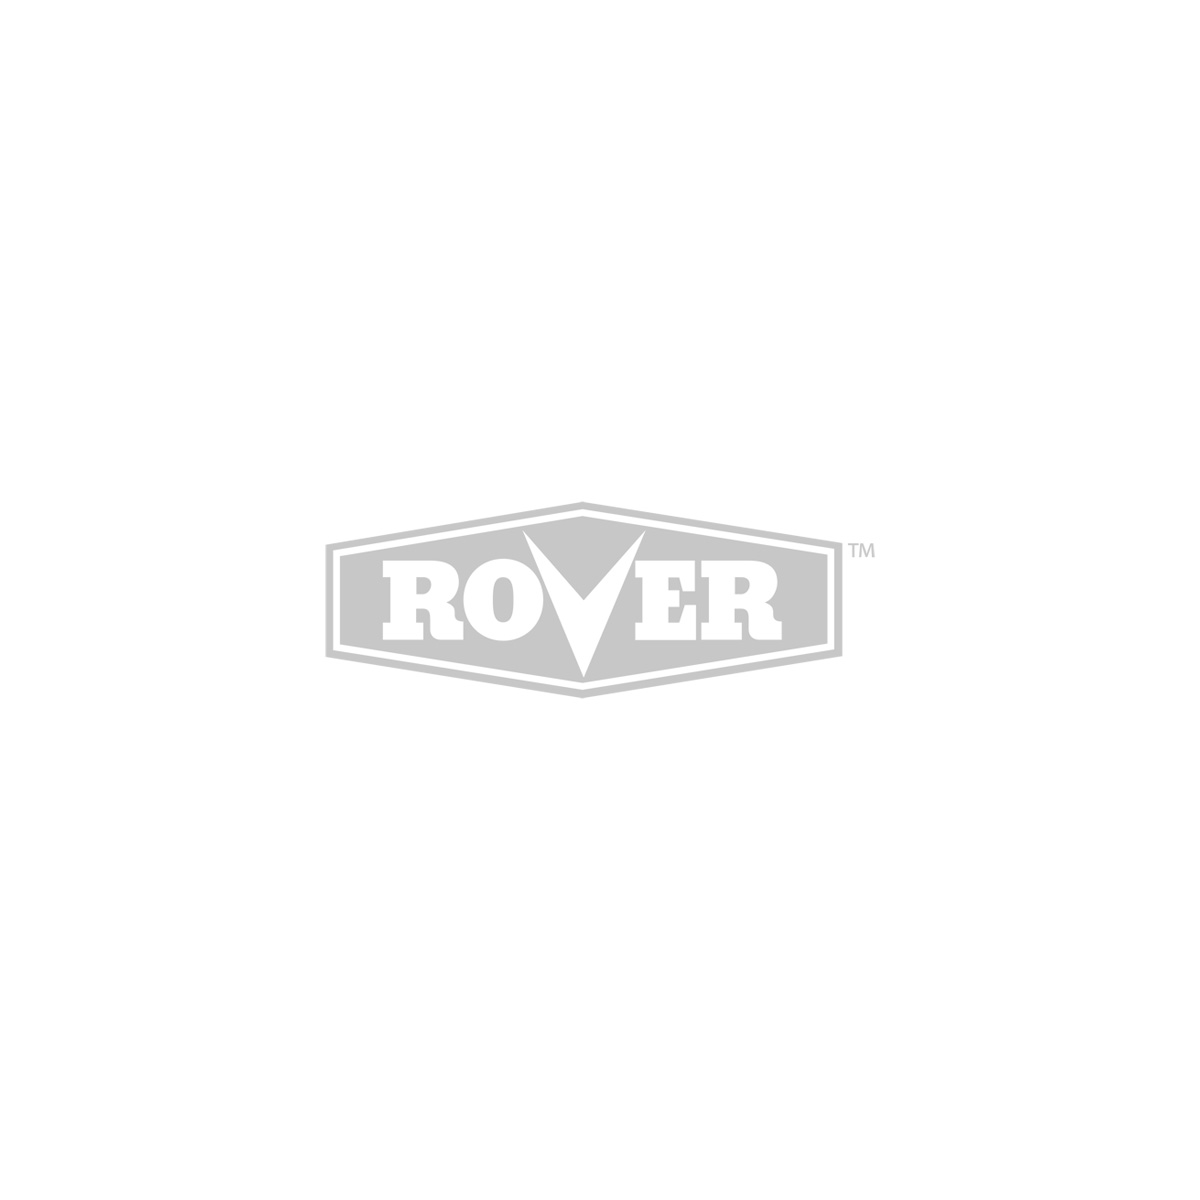 Rover Handhelds